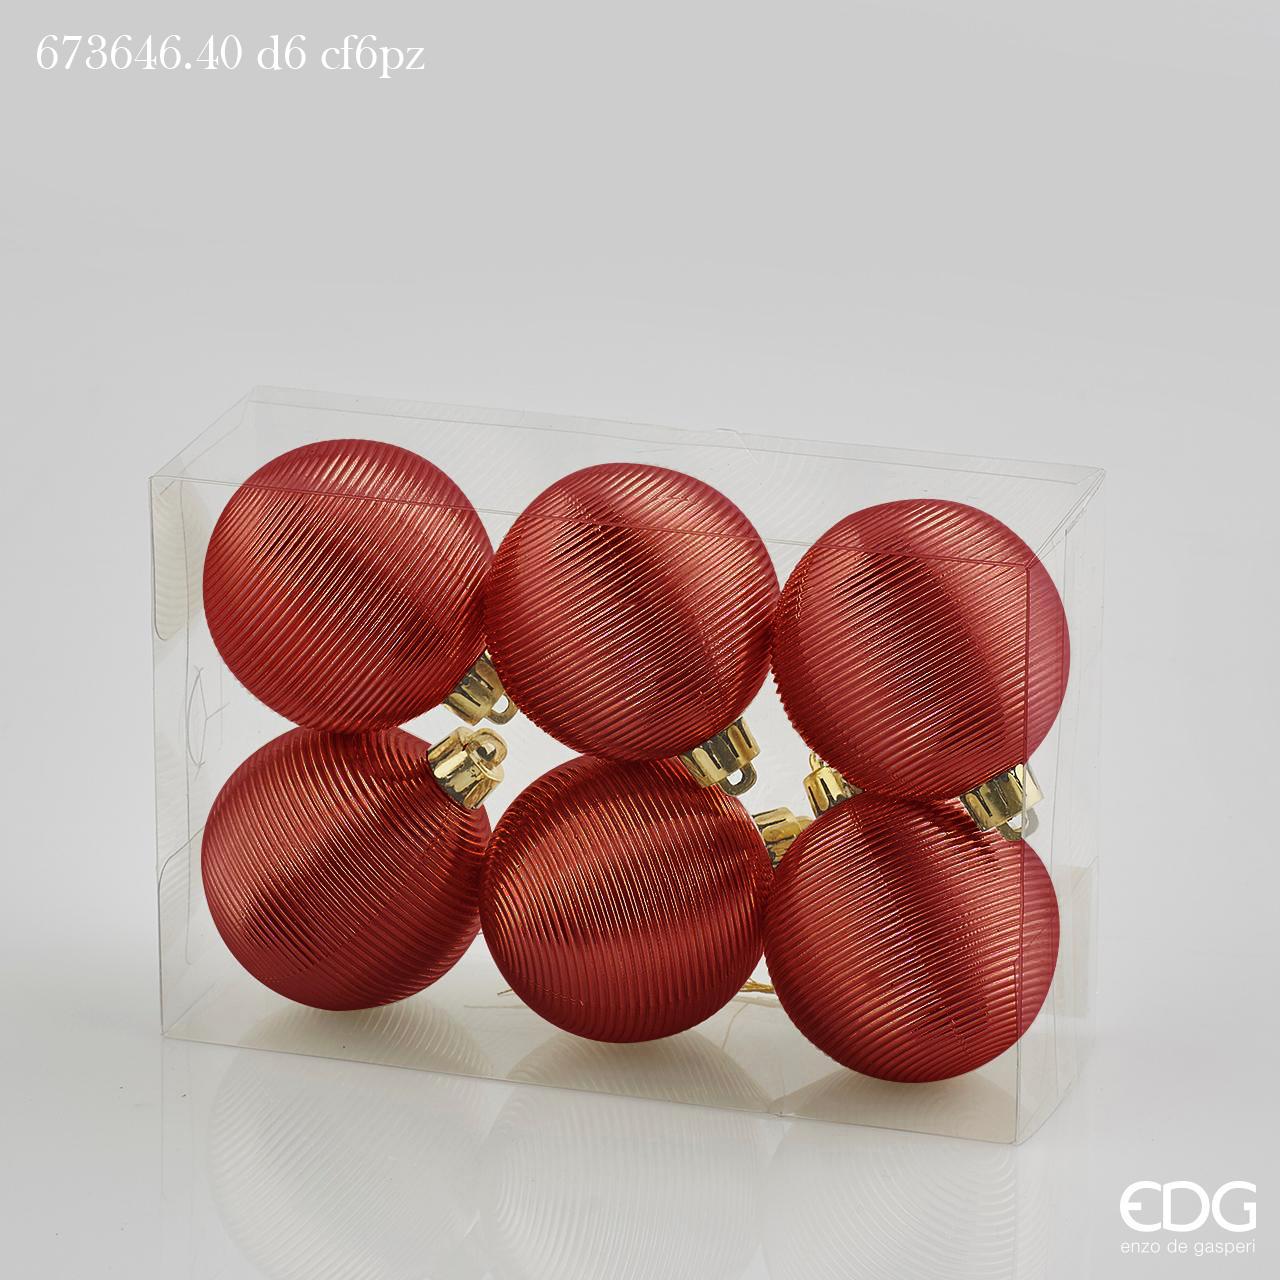 Confezione 6 palline per decorare in plastica di colore rosso diametro cm 6. In negozio e online su tuttochic.it